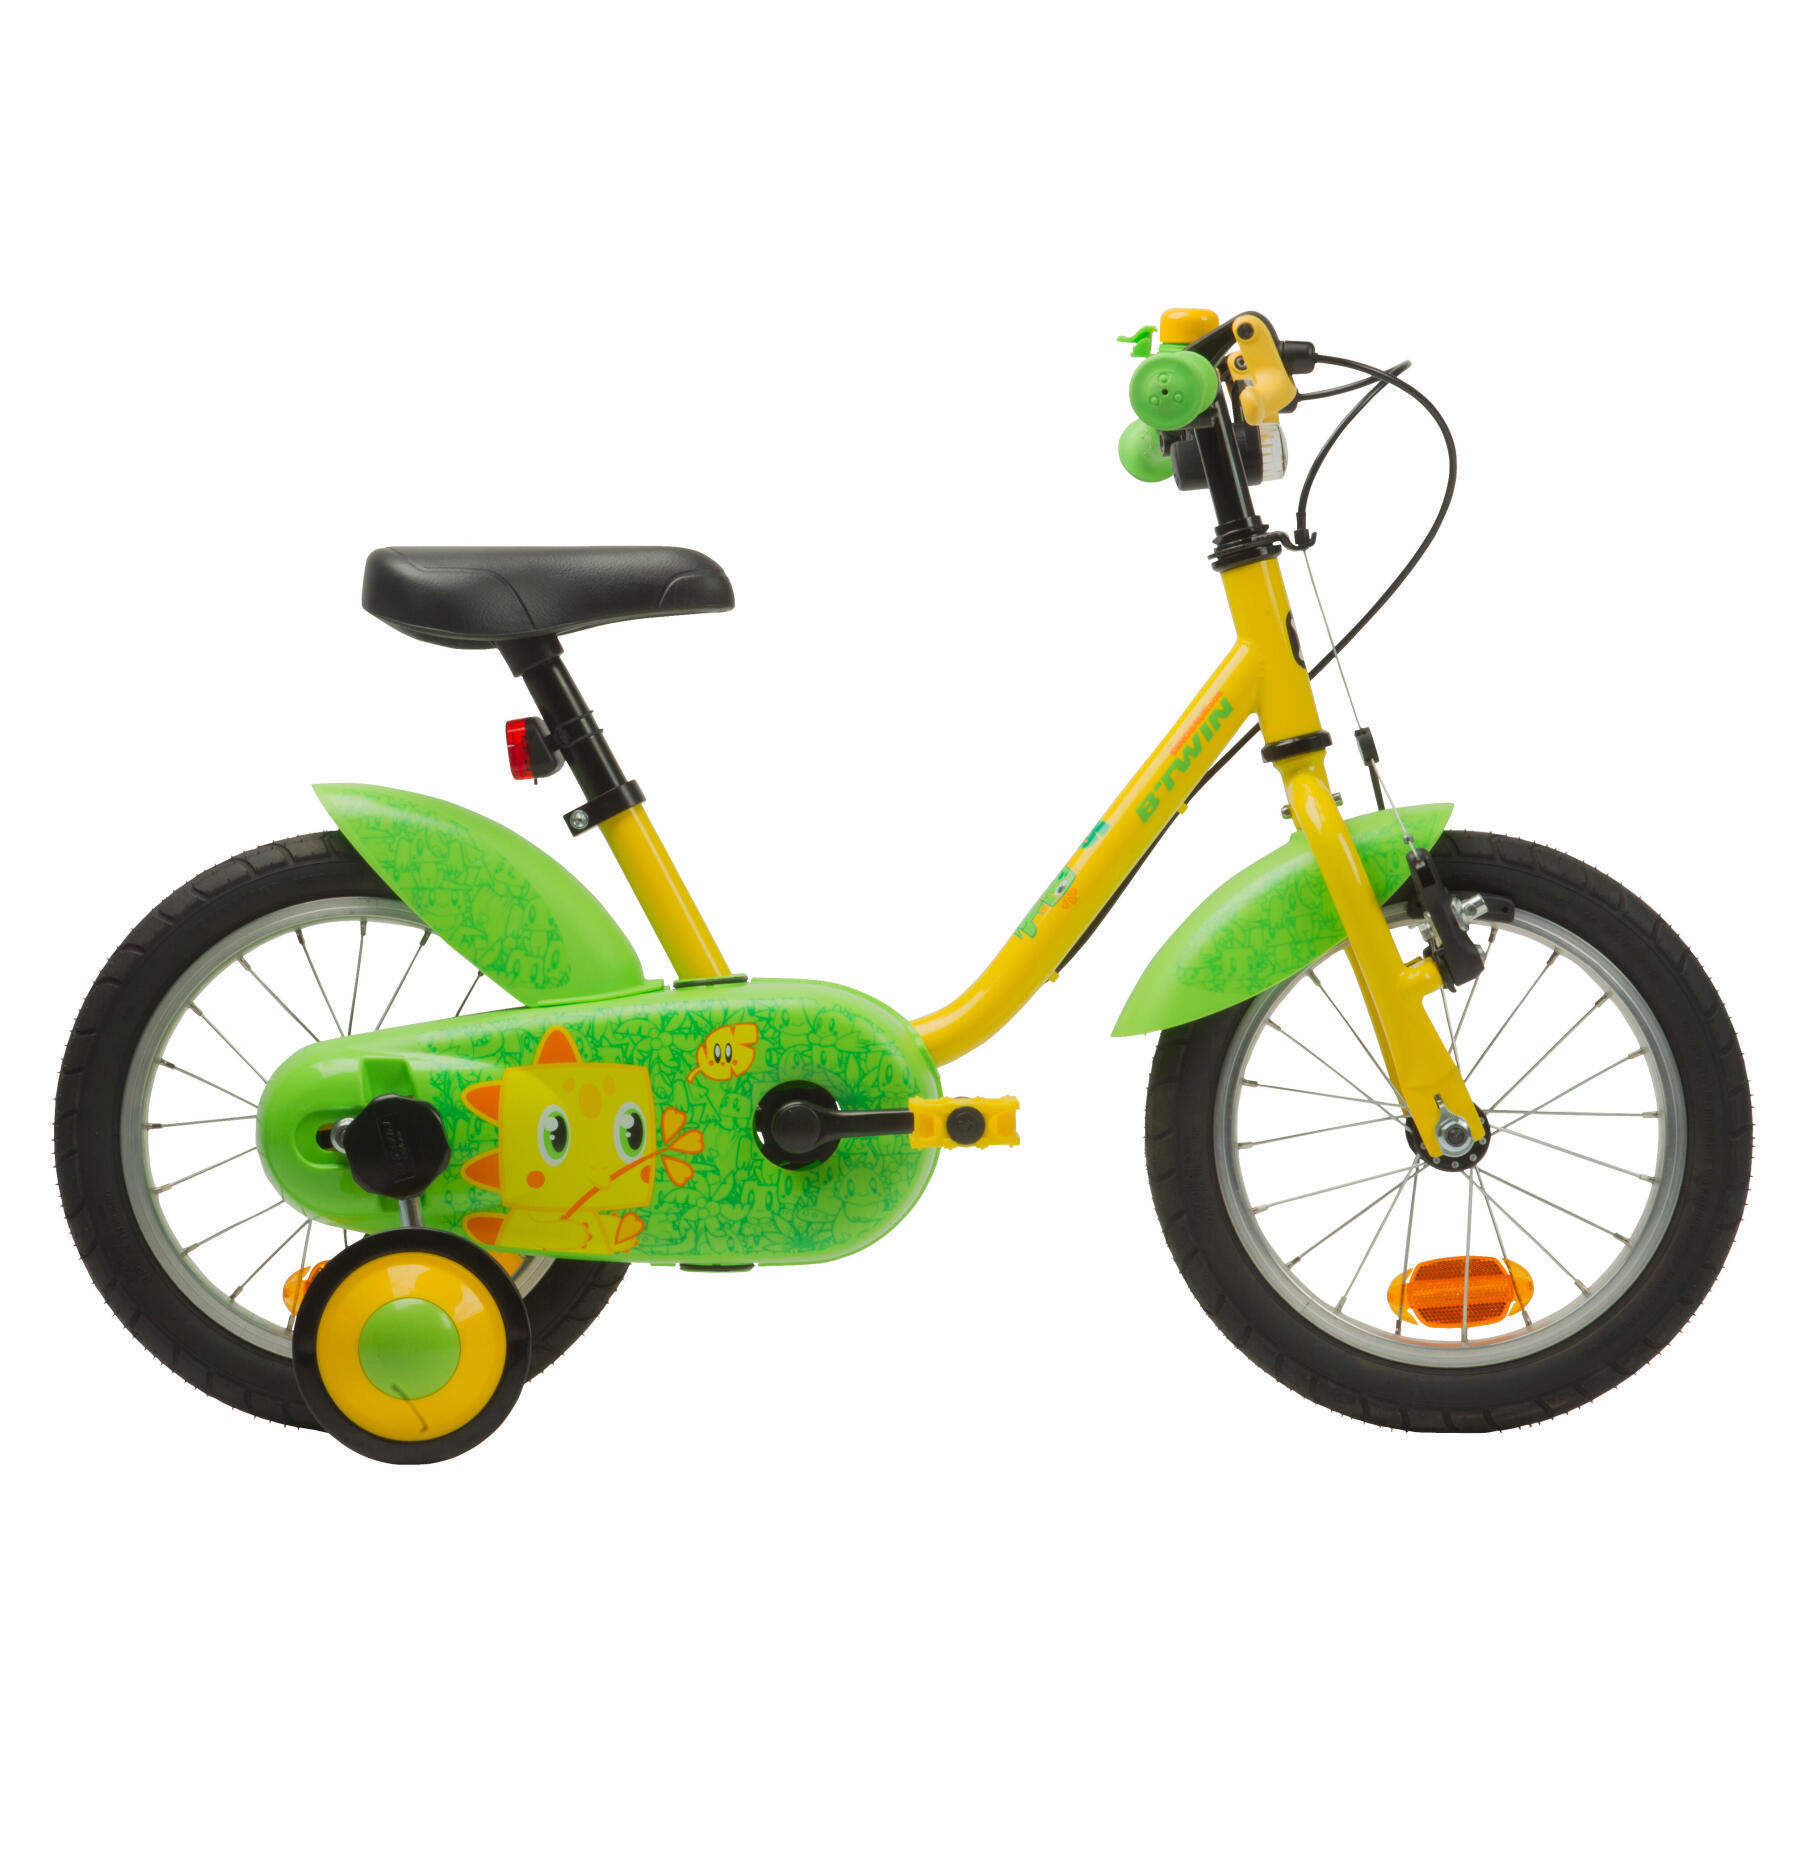 kerékpár_14_pouces_vert_jaune